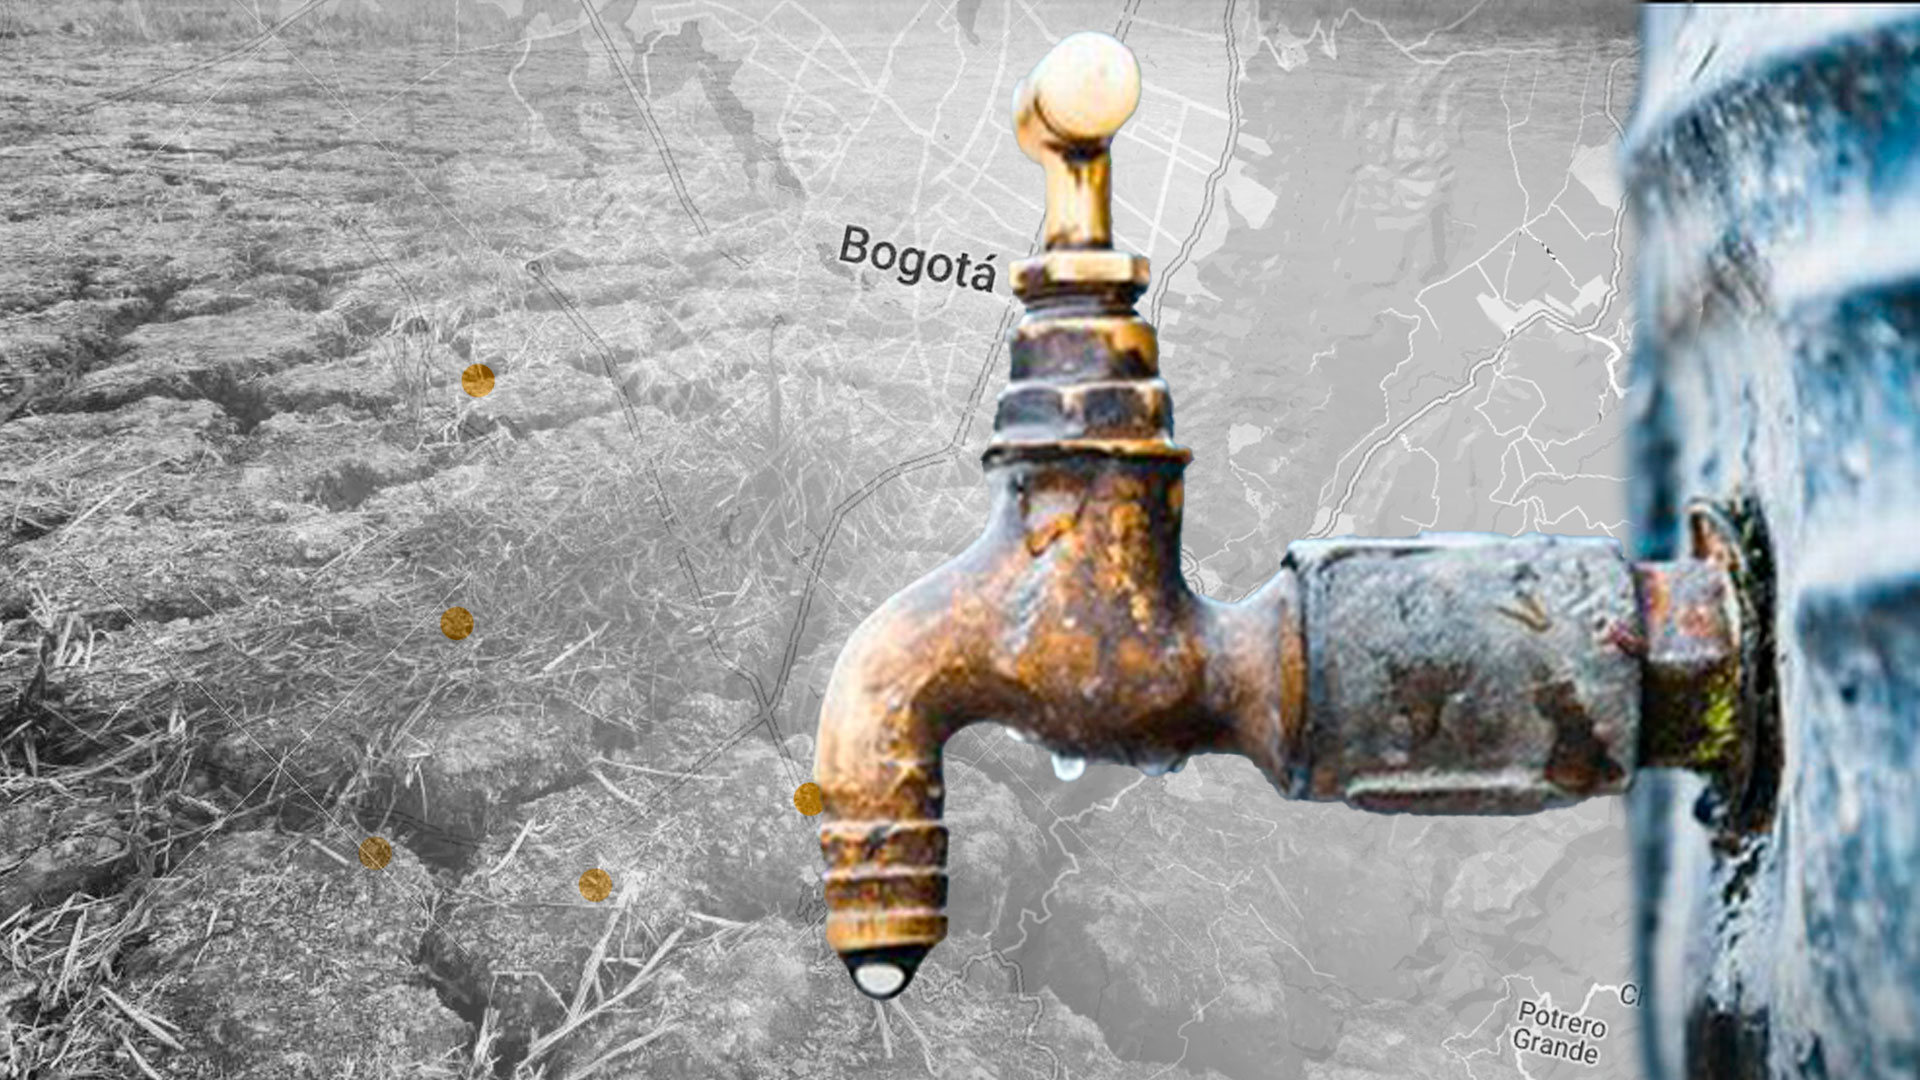 Semana Santa sin agua: siete localidades de Bogotá y tres municipios tendrán cortes del suministro